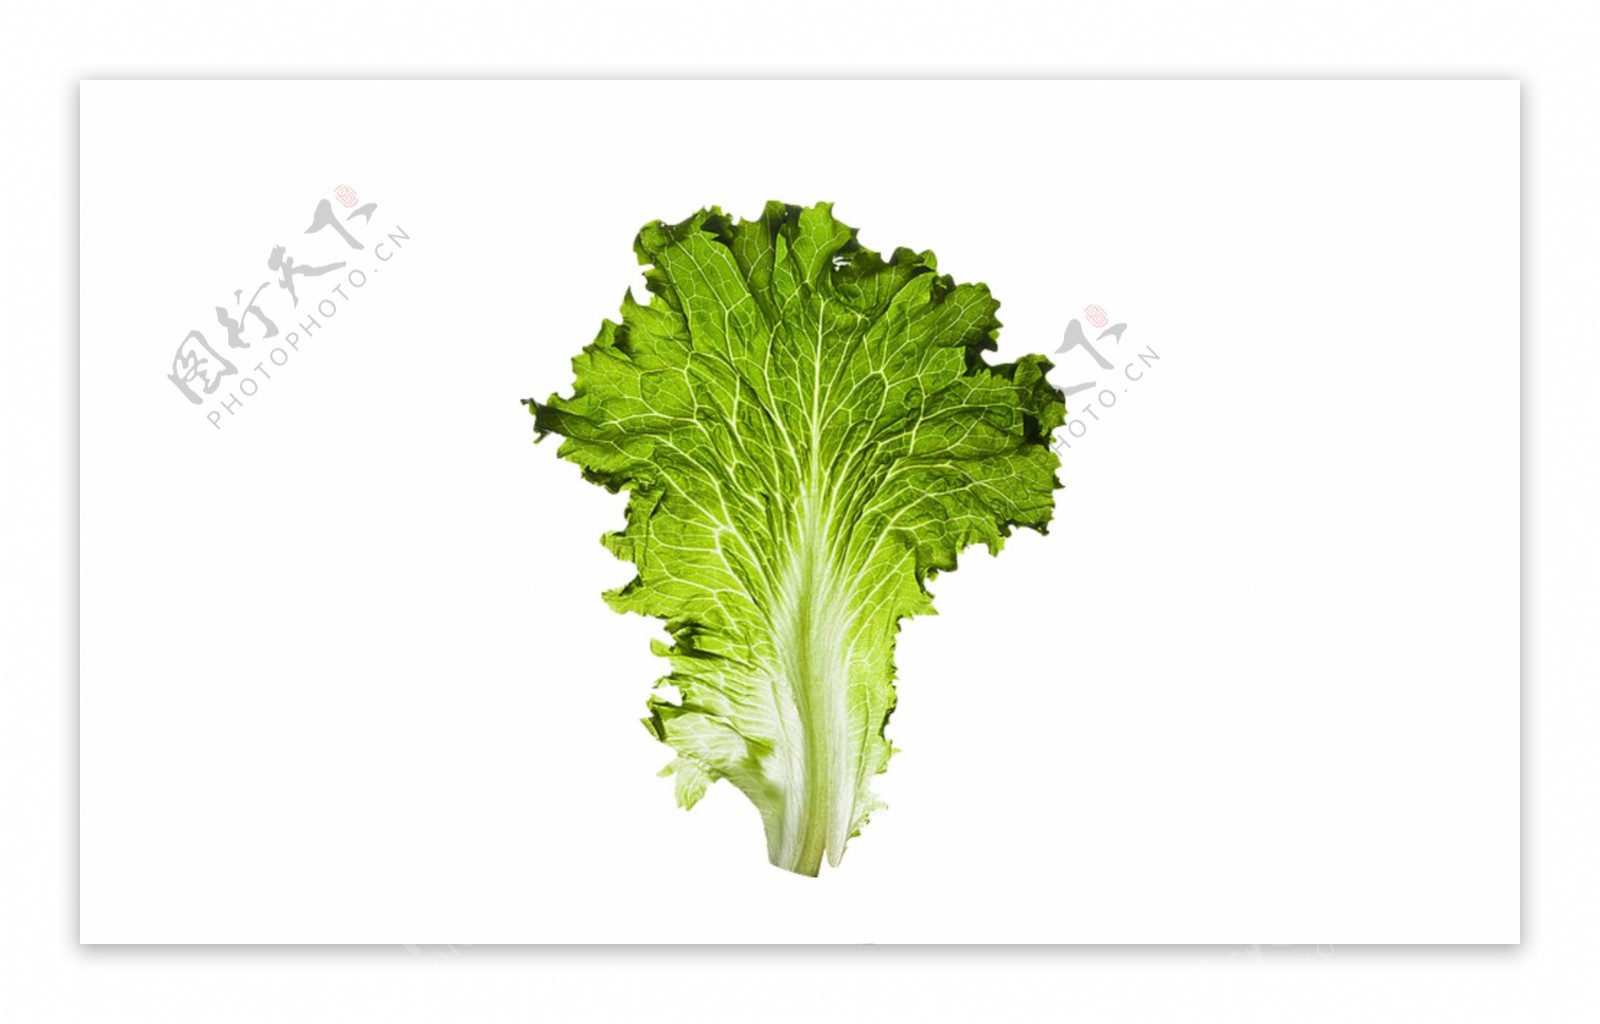 生菜蔬菜绿色水果叶子植物素材